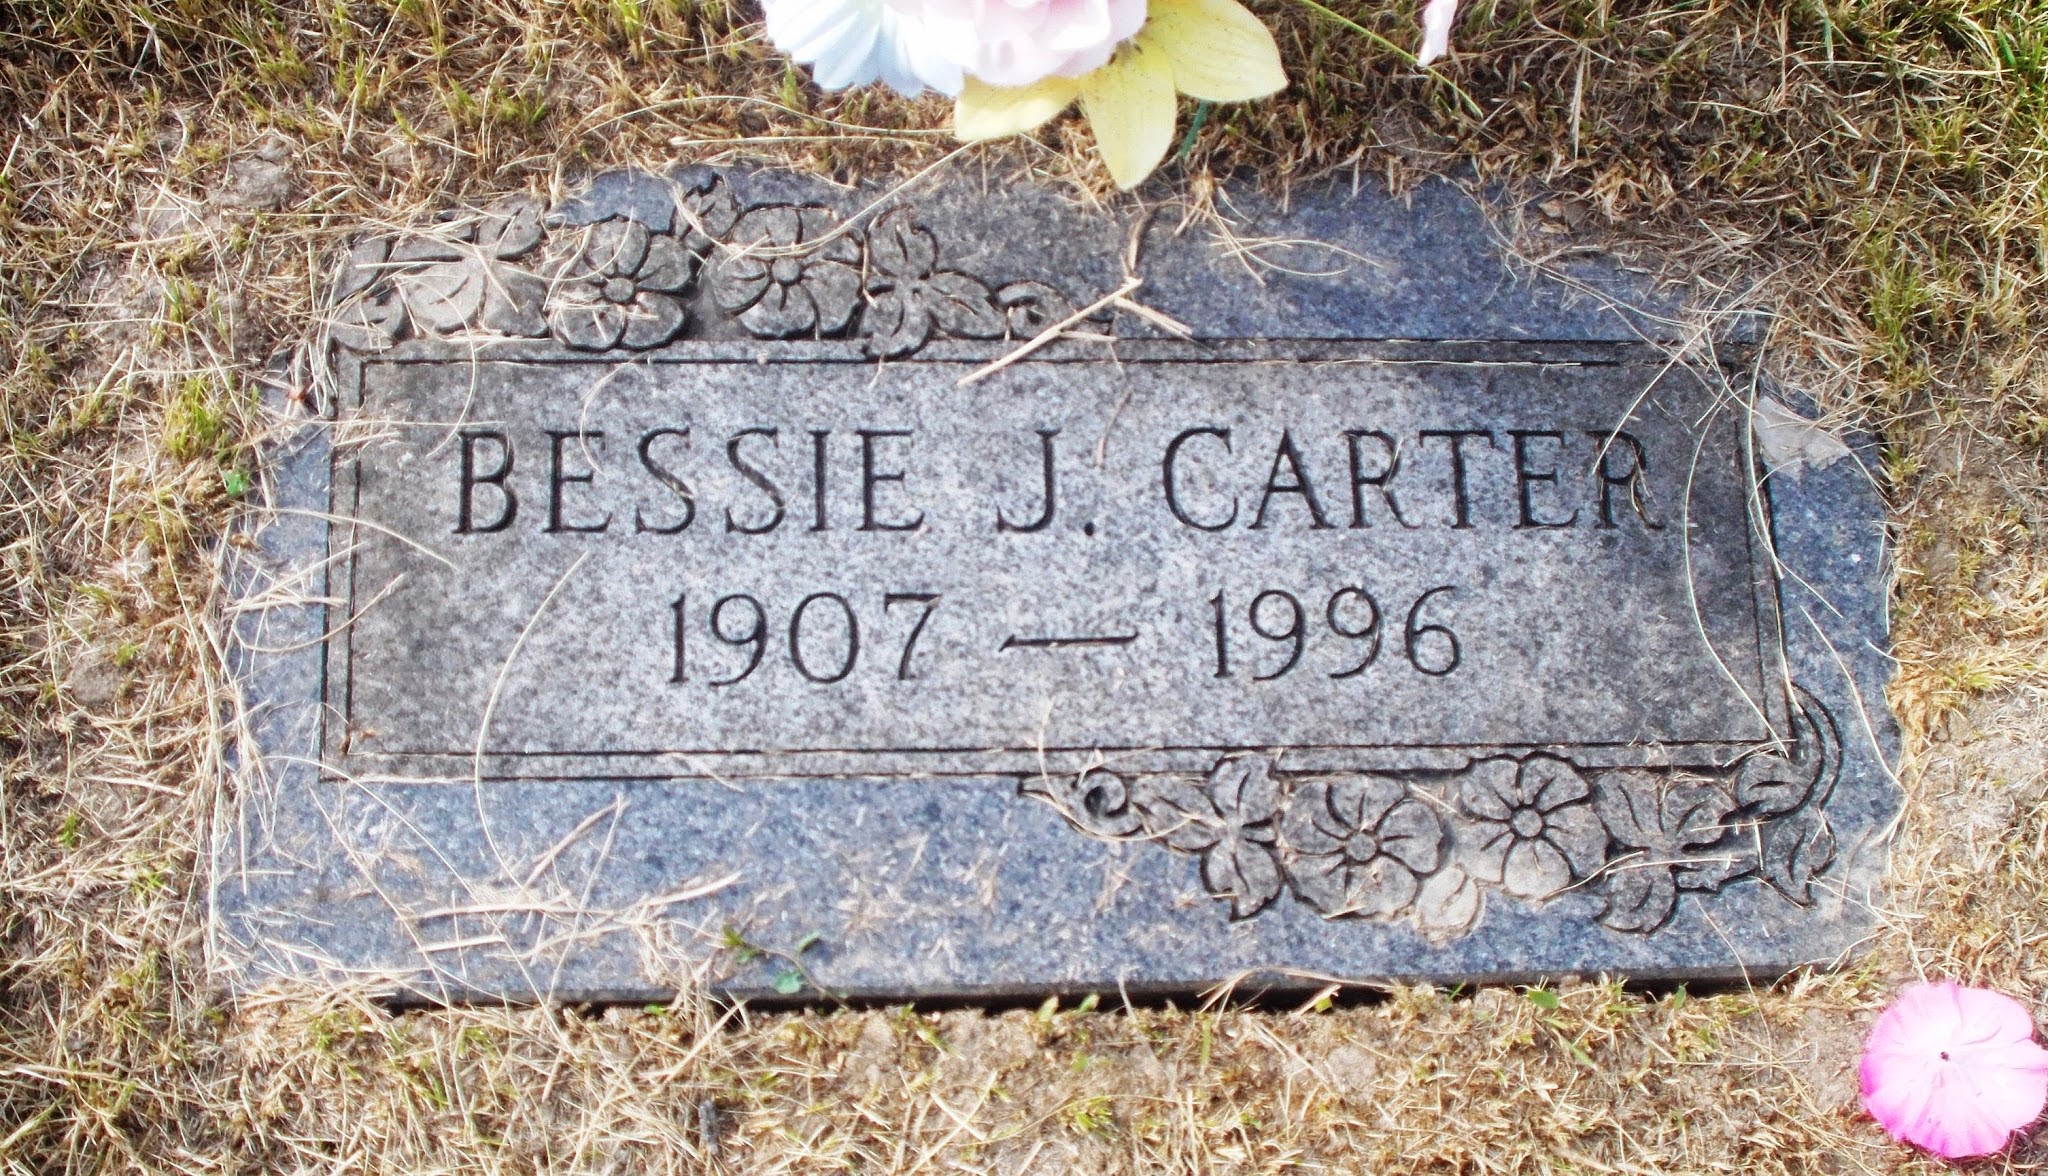 Bessie J Carter